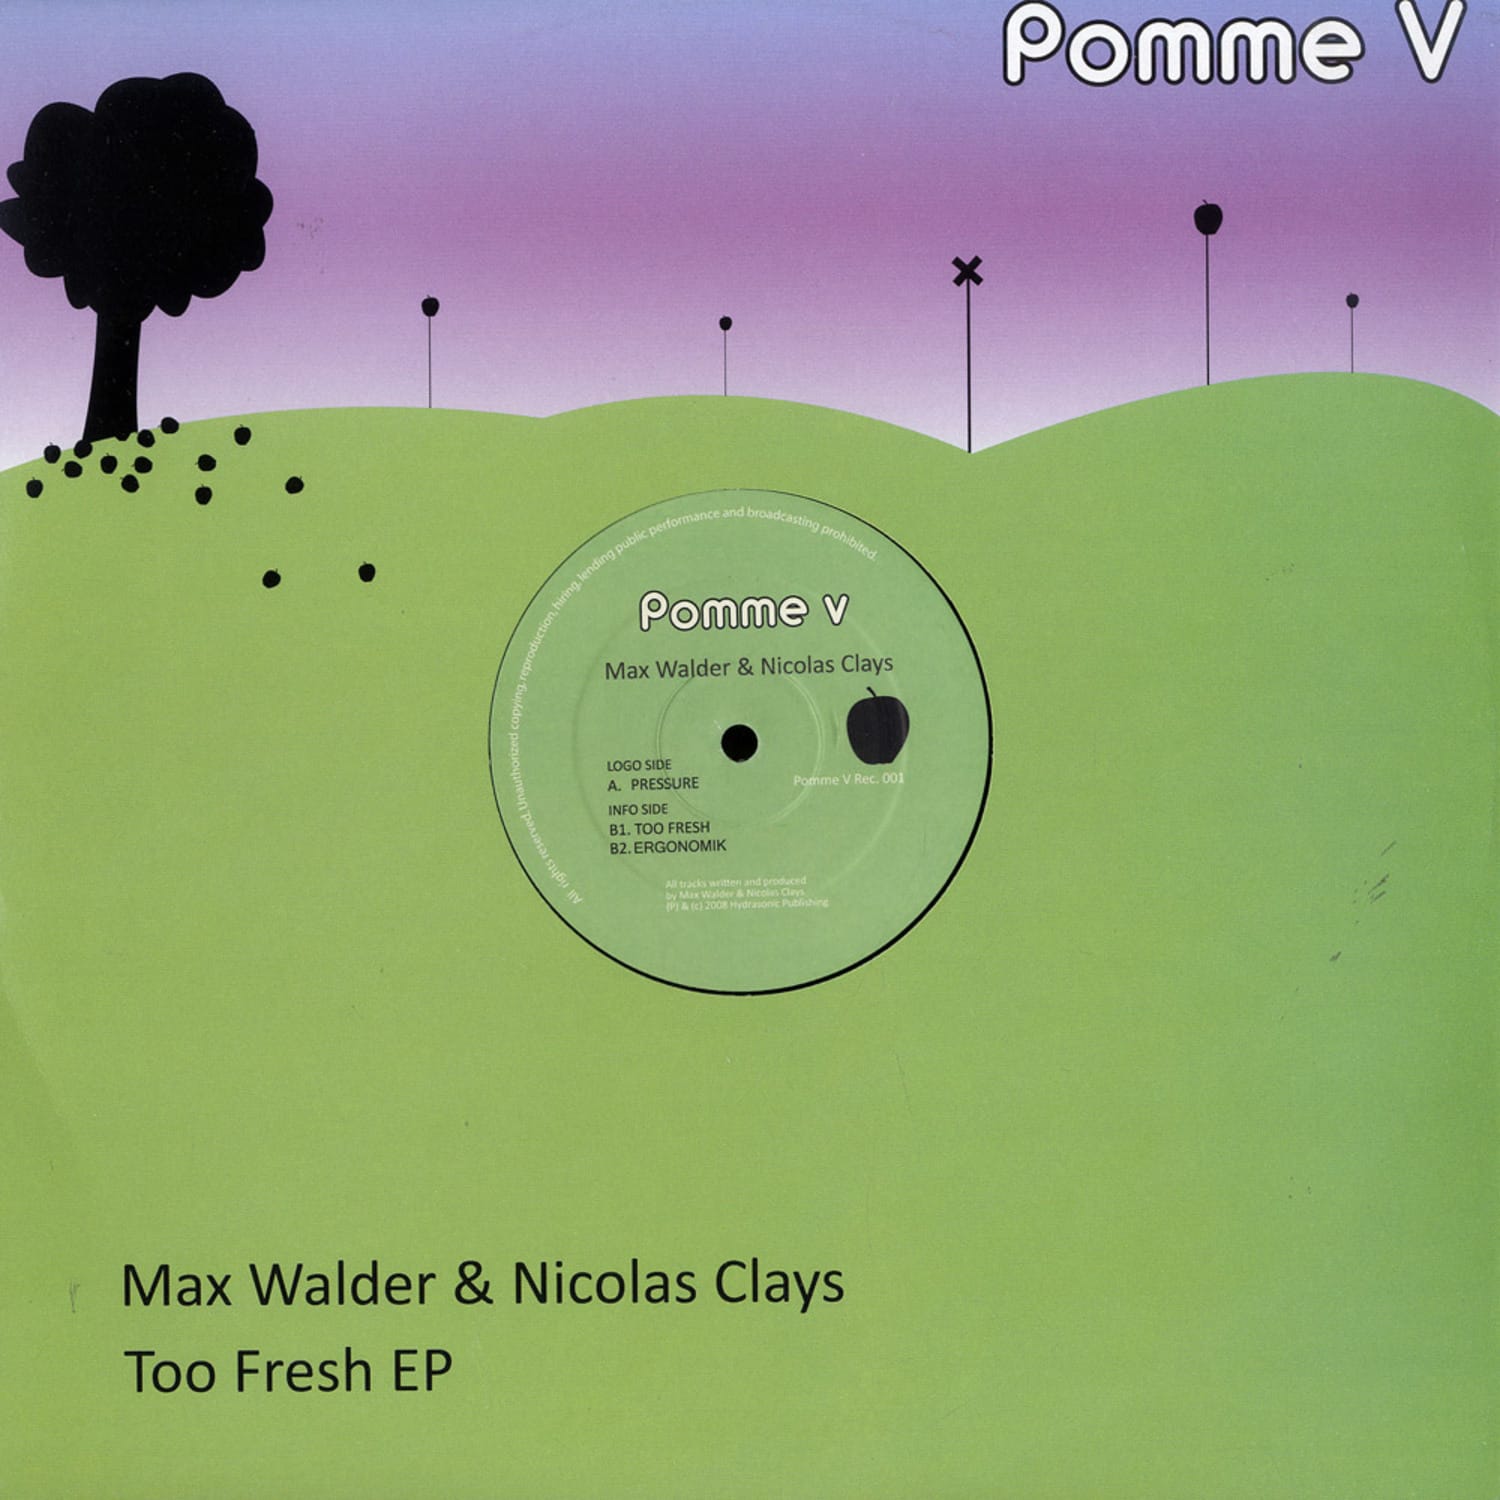 Max Walder & Nicolas Clays - TOO FRESH EP 